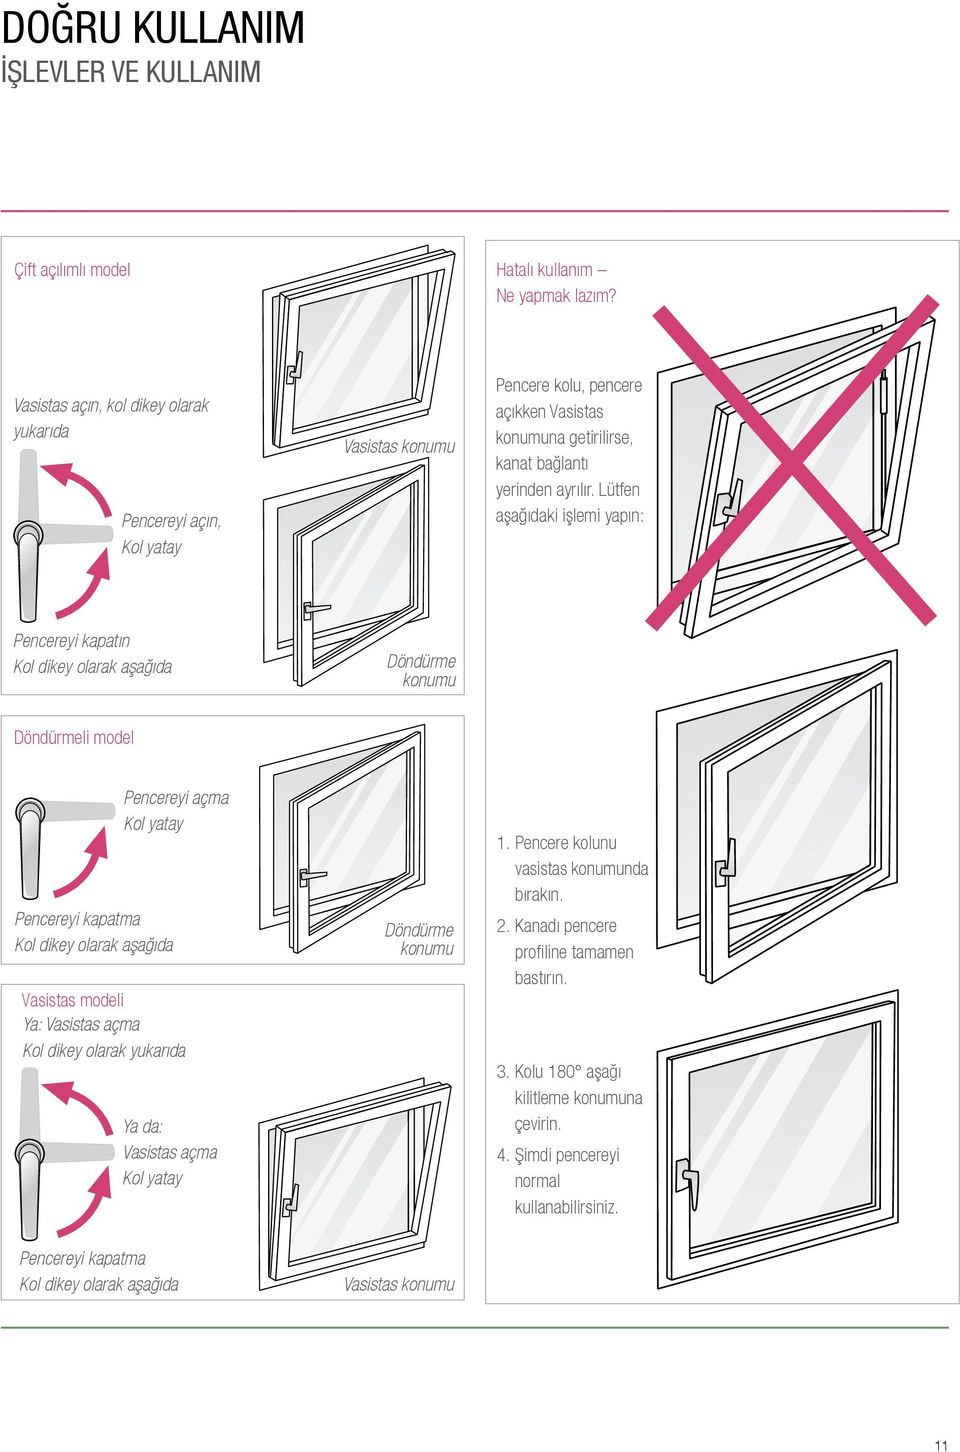 Lütfen aşağıdaki işlemi yapın: Pencereyi kapatın Kol dikey olarak aşağıda Döndürme konumu Döndürmeli model Pencereyi açma Kol yatay Pencereyi kapatma Kol dikey olarak aşağıda Vasistas modeli Ya: